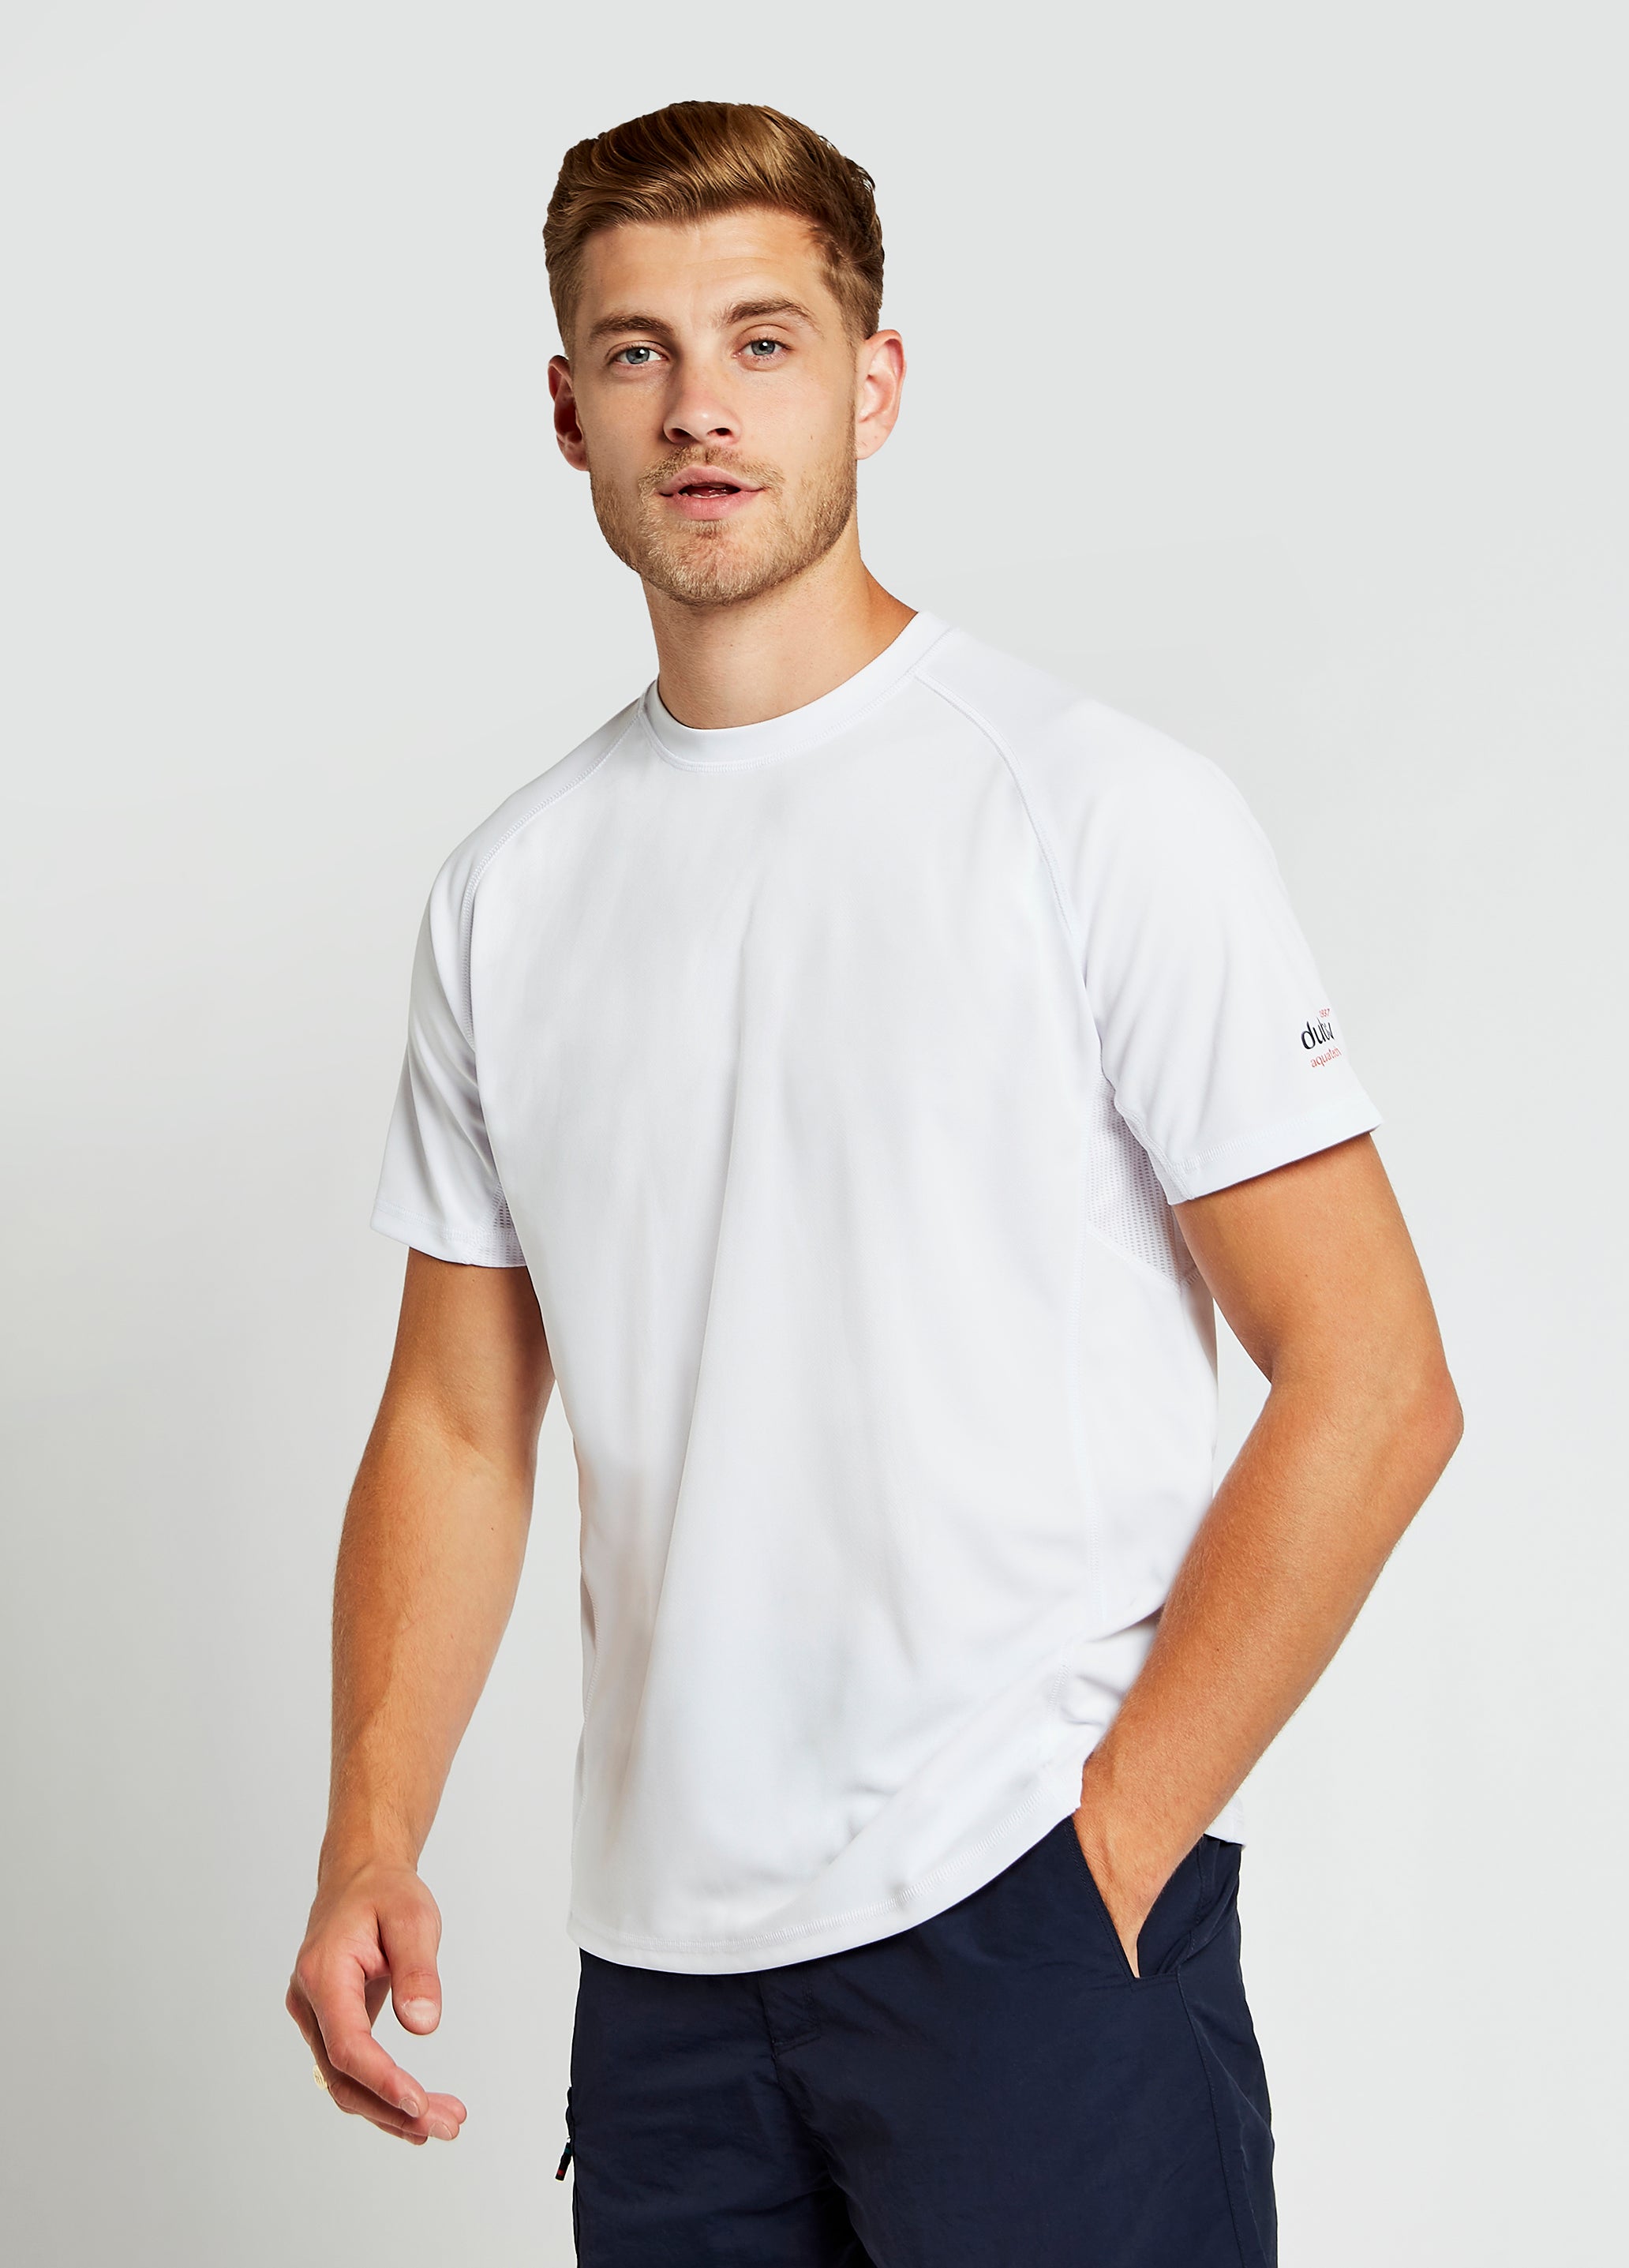 Tangier Men’s Short-sleeved Technical T-Shirt - White